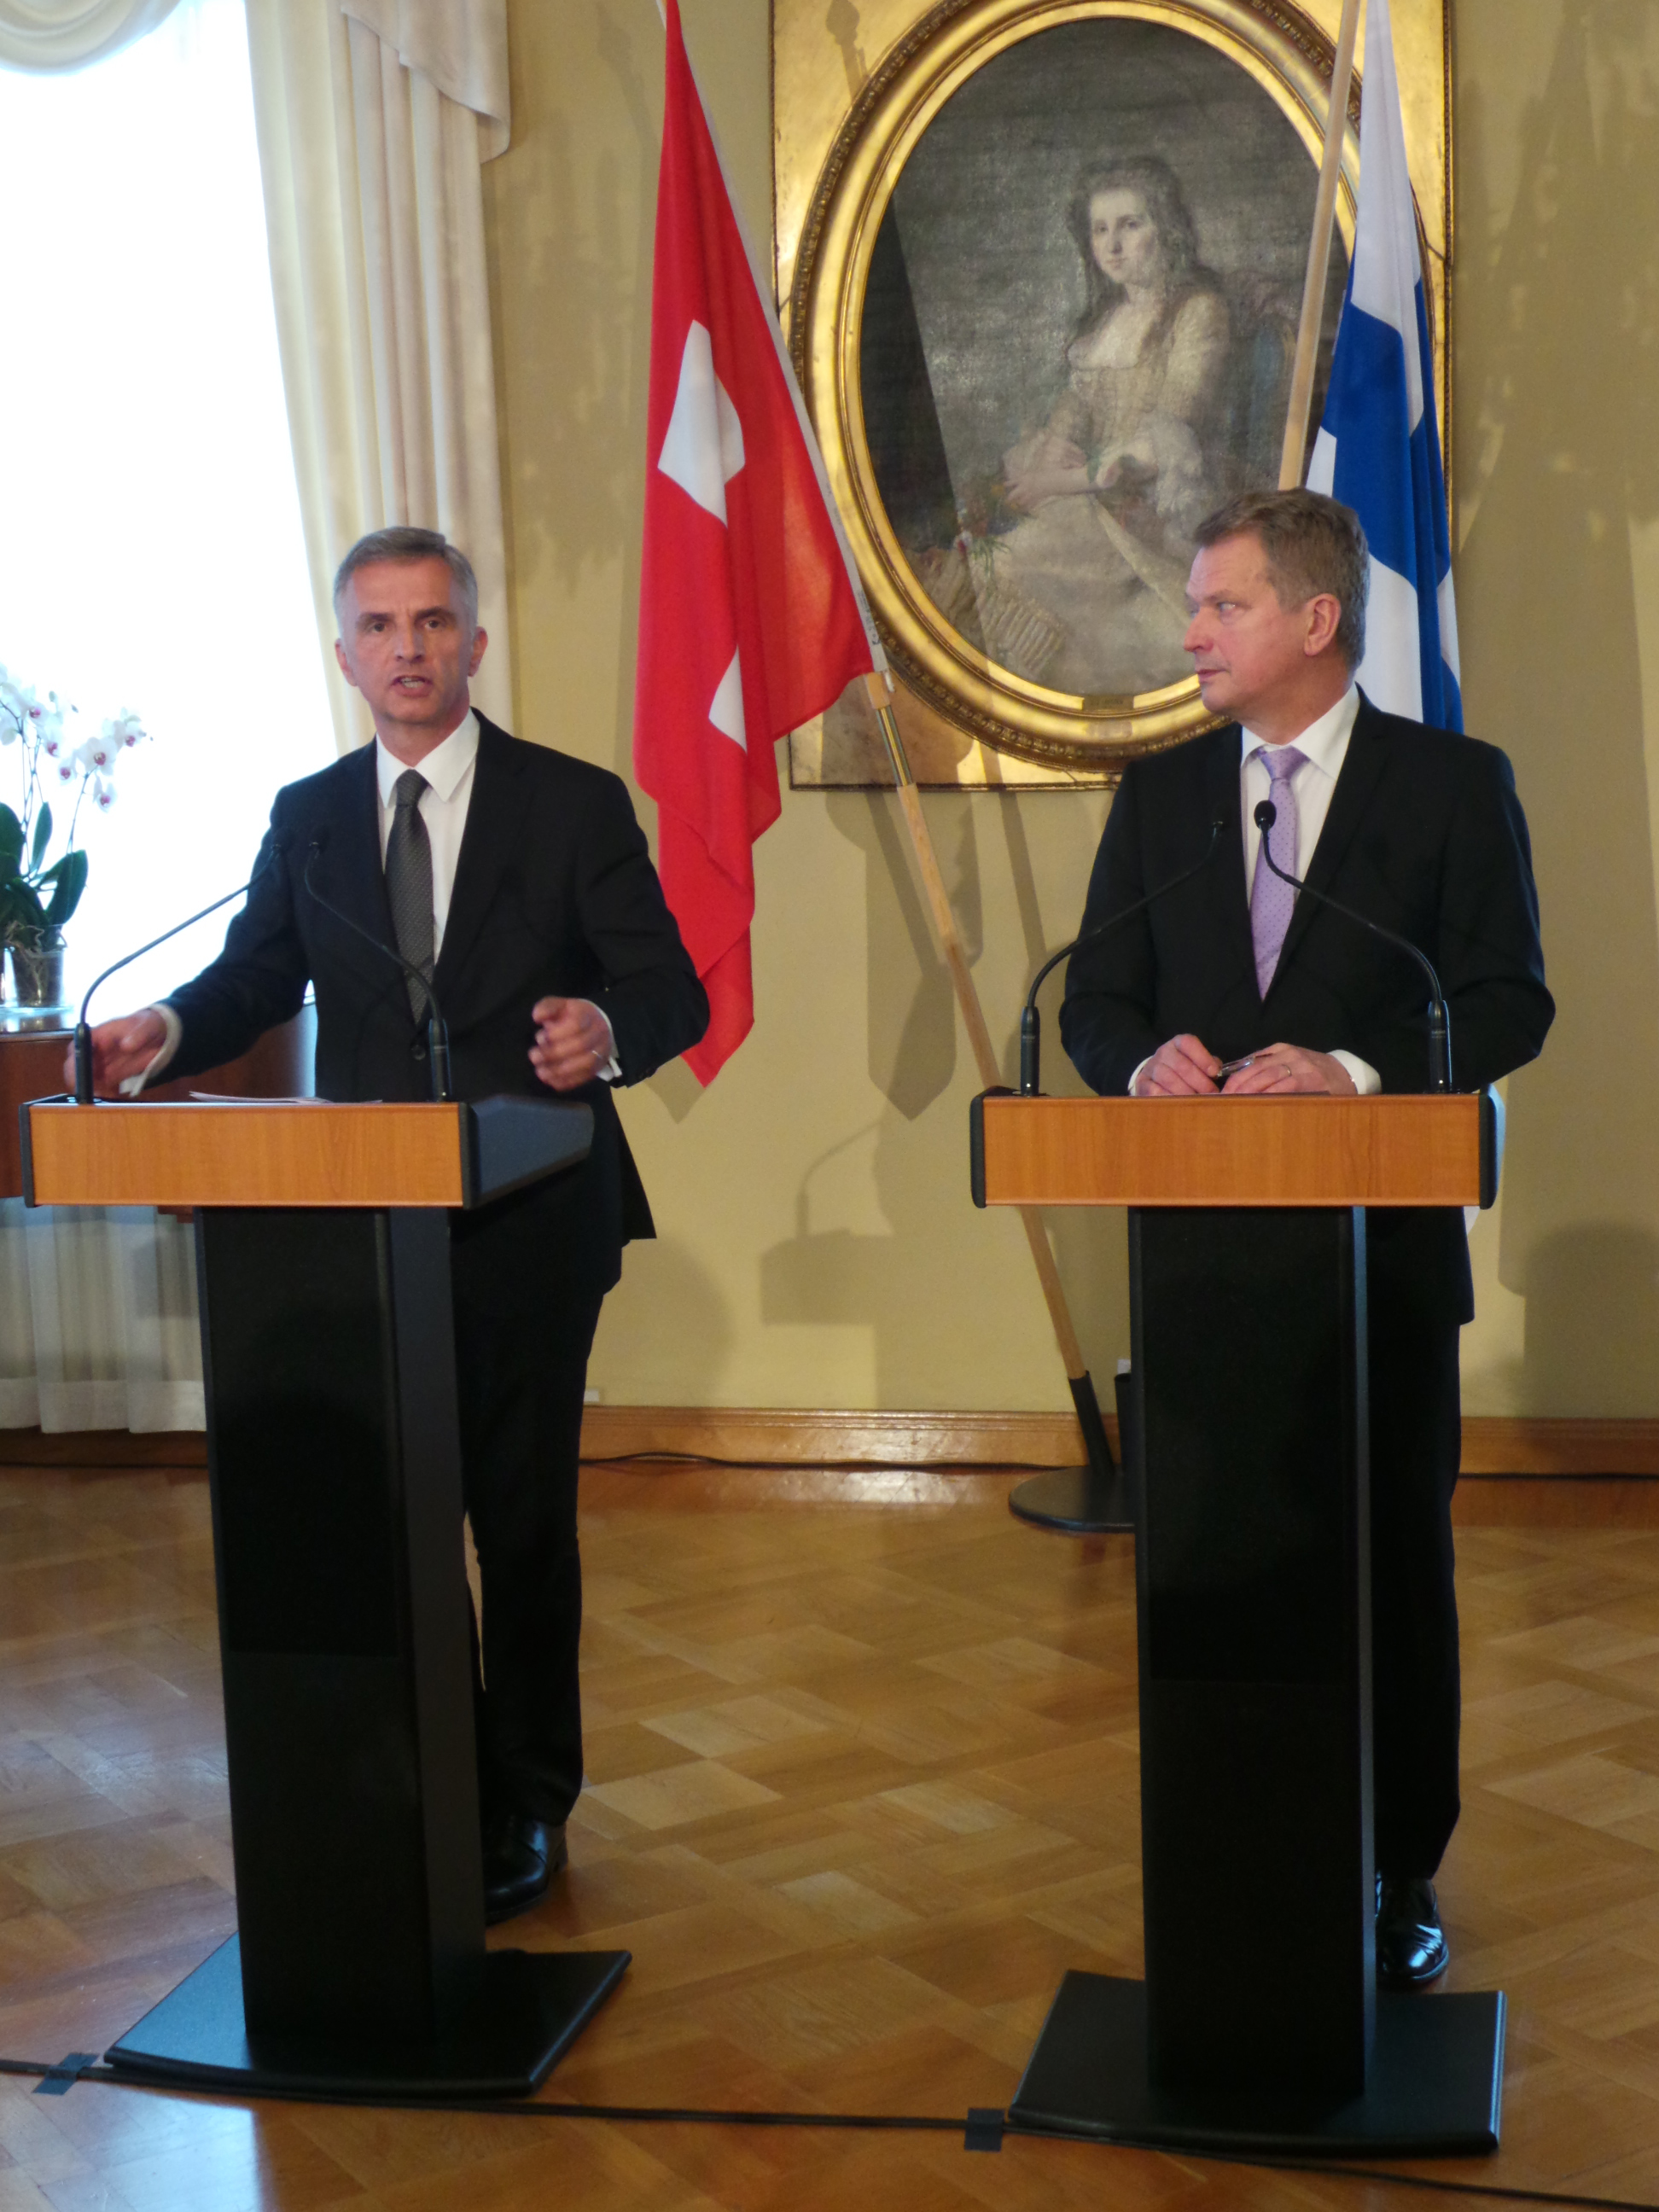 Didier Burkhalter mit dem finnischen Staatspräsidenten Sauli Niinistö während einer Pressekonferenz.